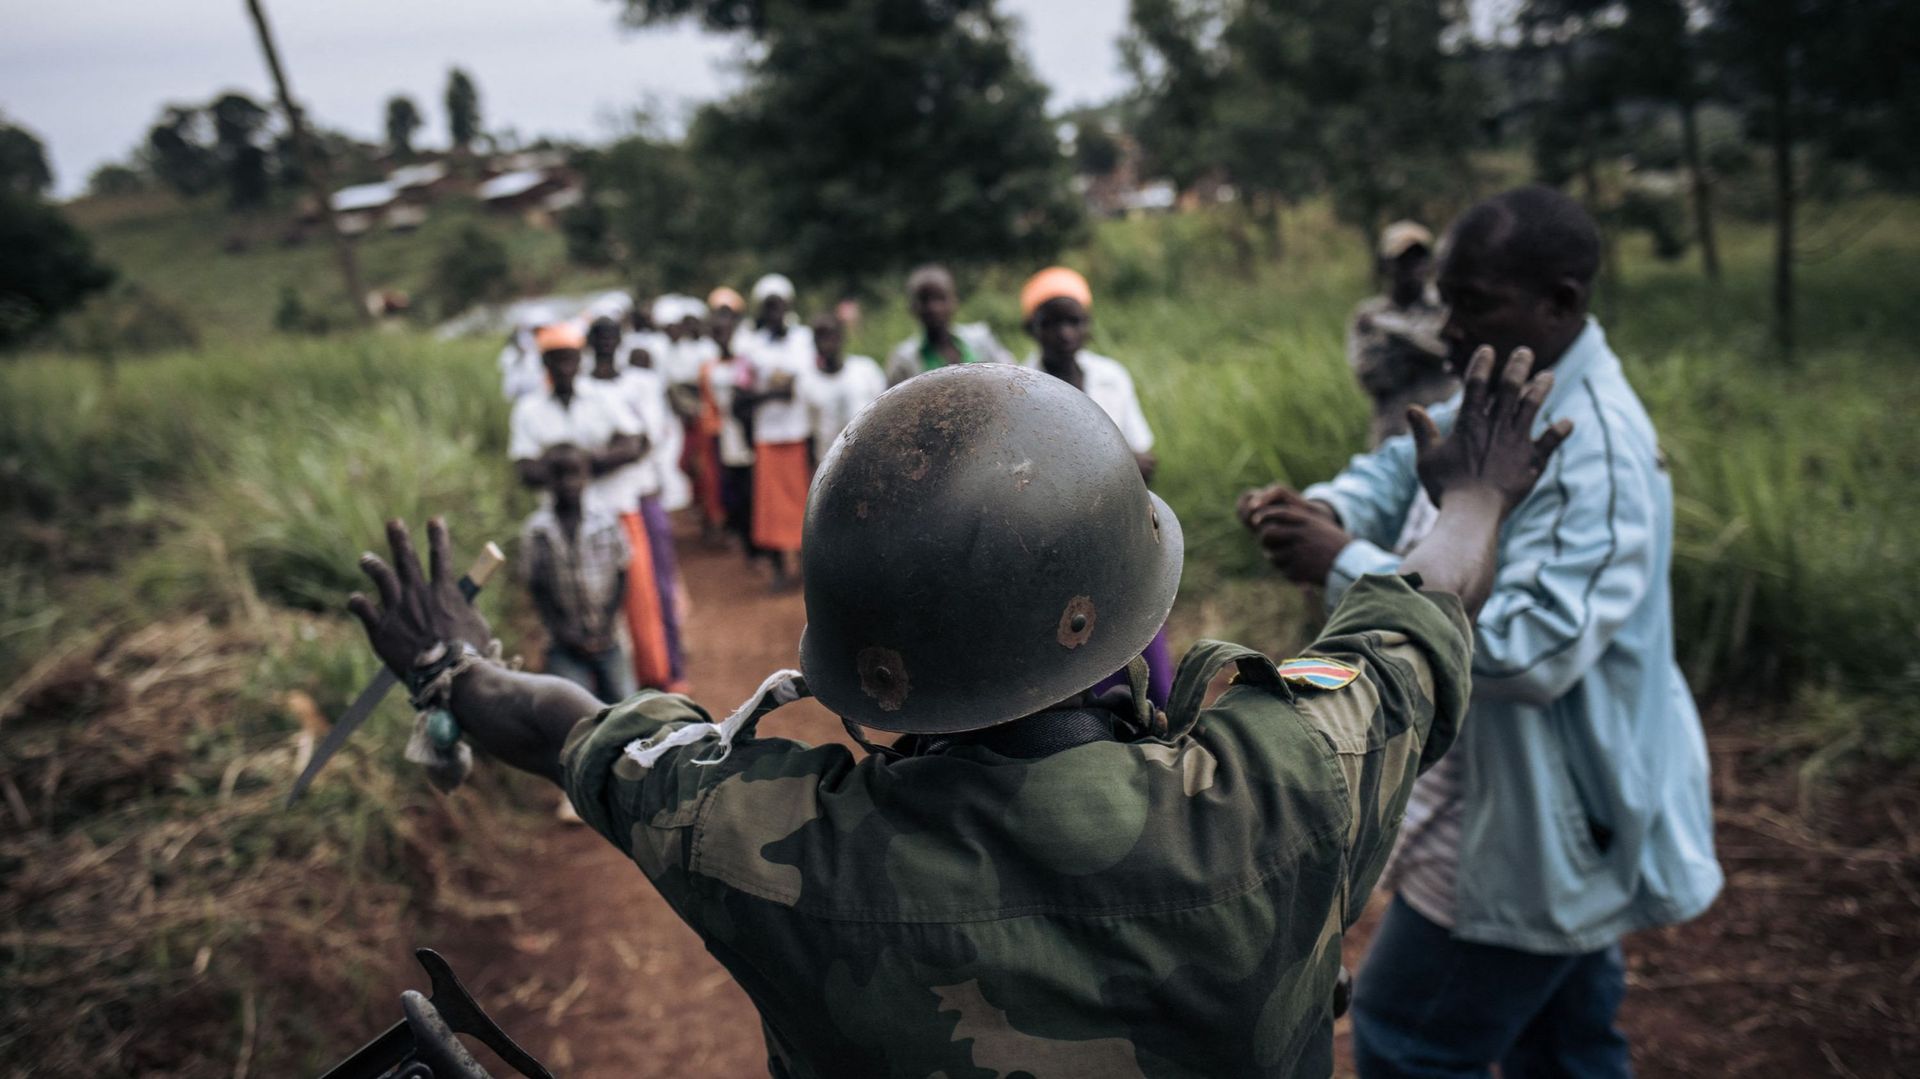  Un milicien du groupe armé URDPC/CODECO (Union des Révolutionnaires pour la Défense du Peuple Congolais/Coopérative pour le Développement du Congo) de la communauté Lendu fait un signe d'arrêt lors d'une procession religieuse de la secte CODECO dans le v